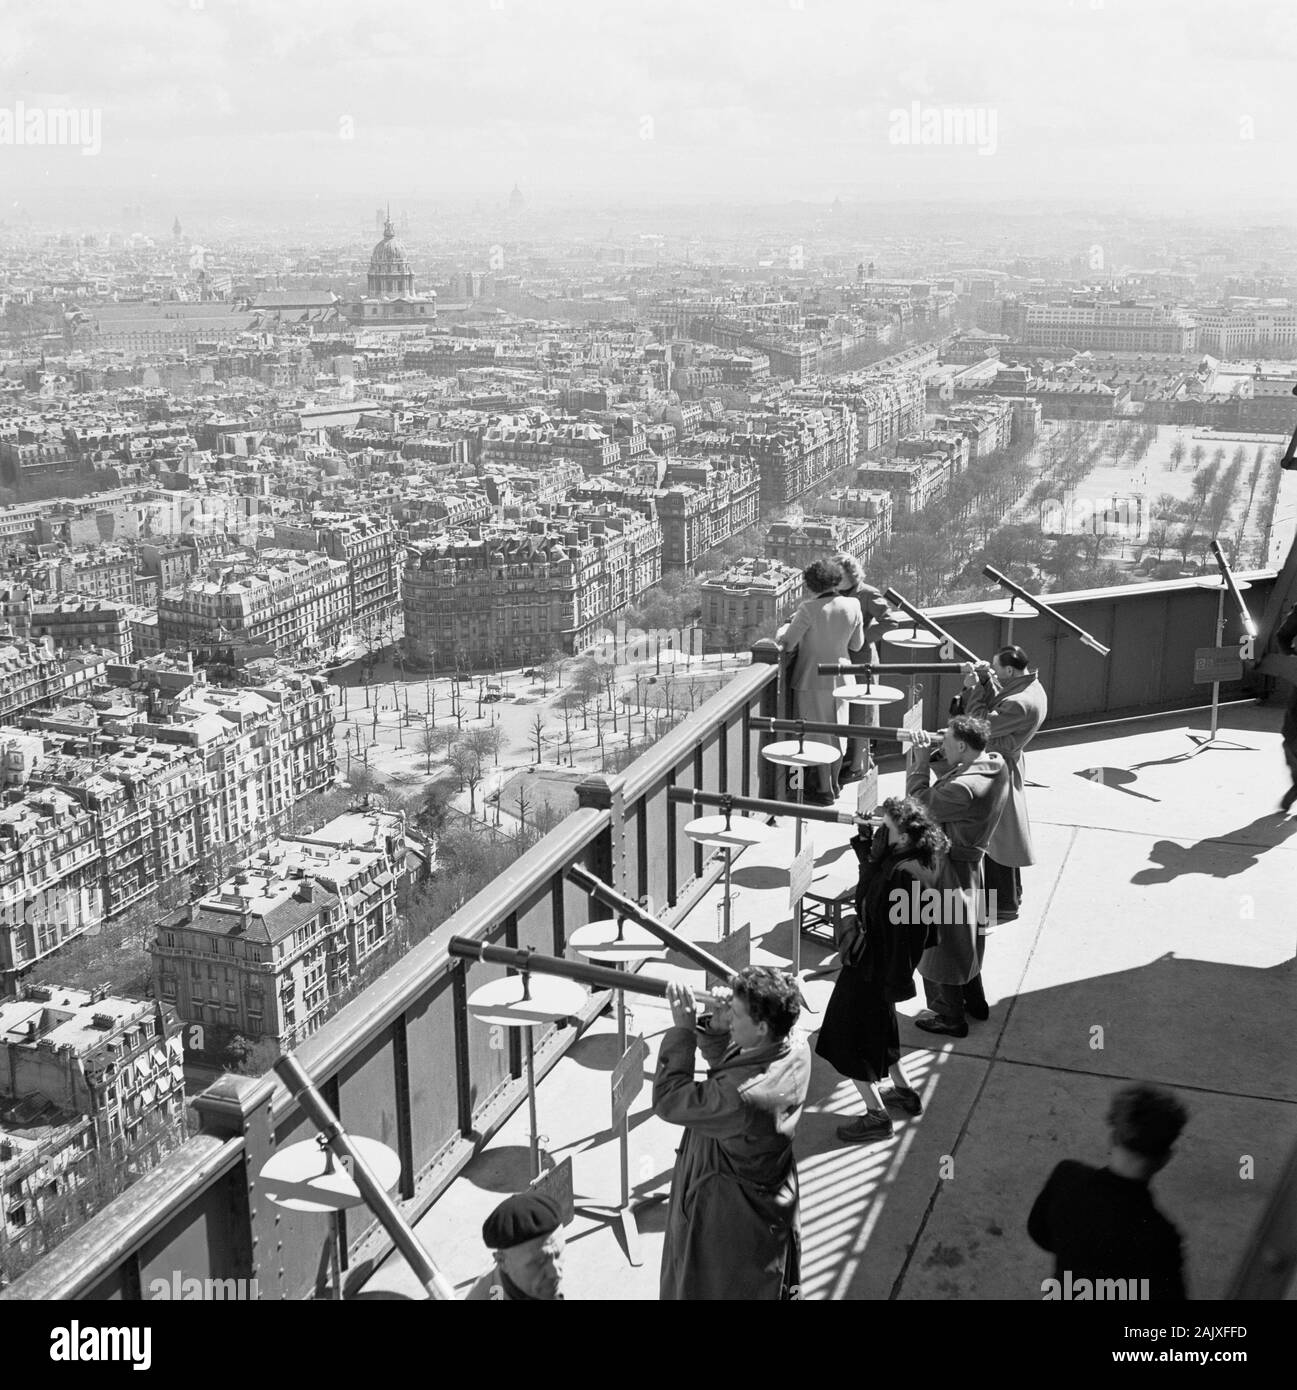 1950, historische, Personen mit Teleskopen in der französischen Hauptstadt zu sehen, hoch oben auf einem anzeigen Galerie auf dem berühmten französischen Wahrzeichen, dem Eiffelturm, Paris, Frankreich. Wenn 1889 fertiggestellt, das Gitter Tower ist das höchste Gebäude der Welt und blieb bis 1929. Stockfoto